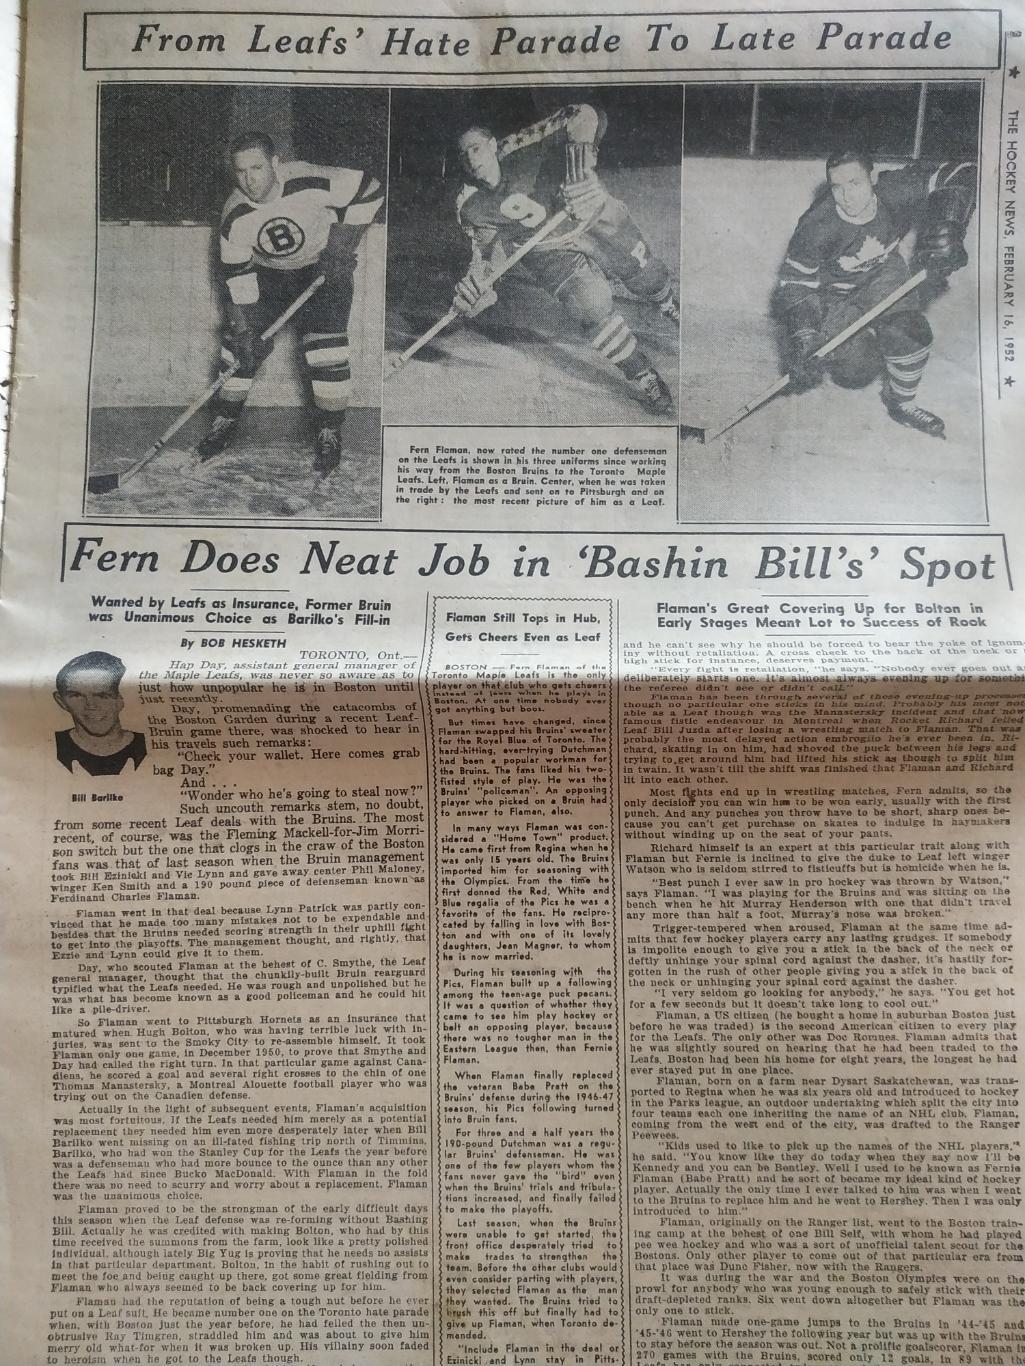 ХОККЕЙ ЖУРНАЛ ЕЖЕНЕДЕЛЬНИК НХЛ НОВОСТИ ХОККЕЯ FEB.16 1952 NHL THE HOCKEY NEWS 1